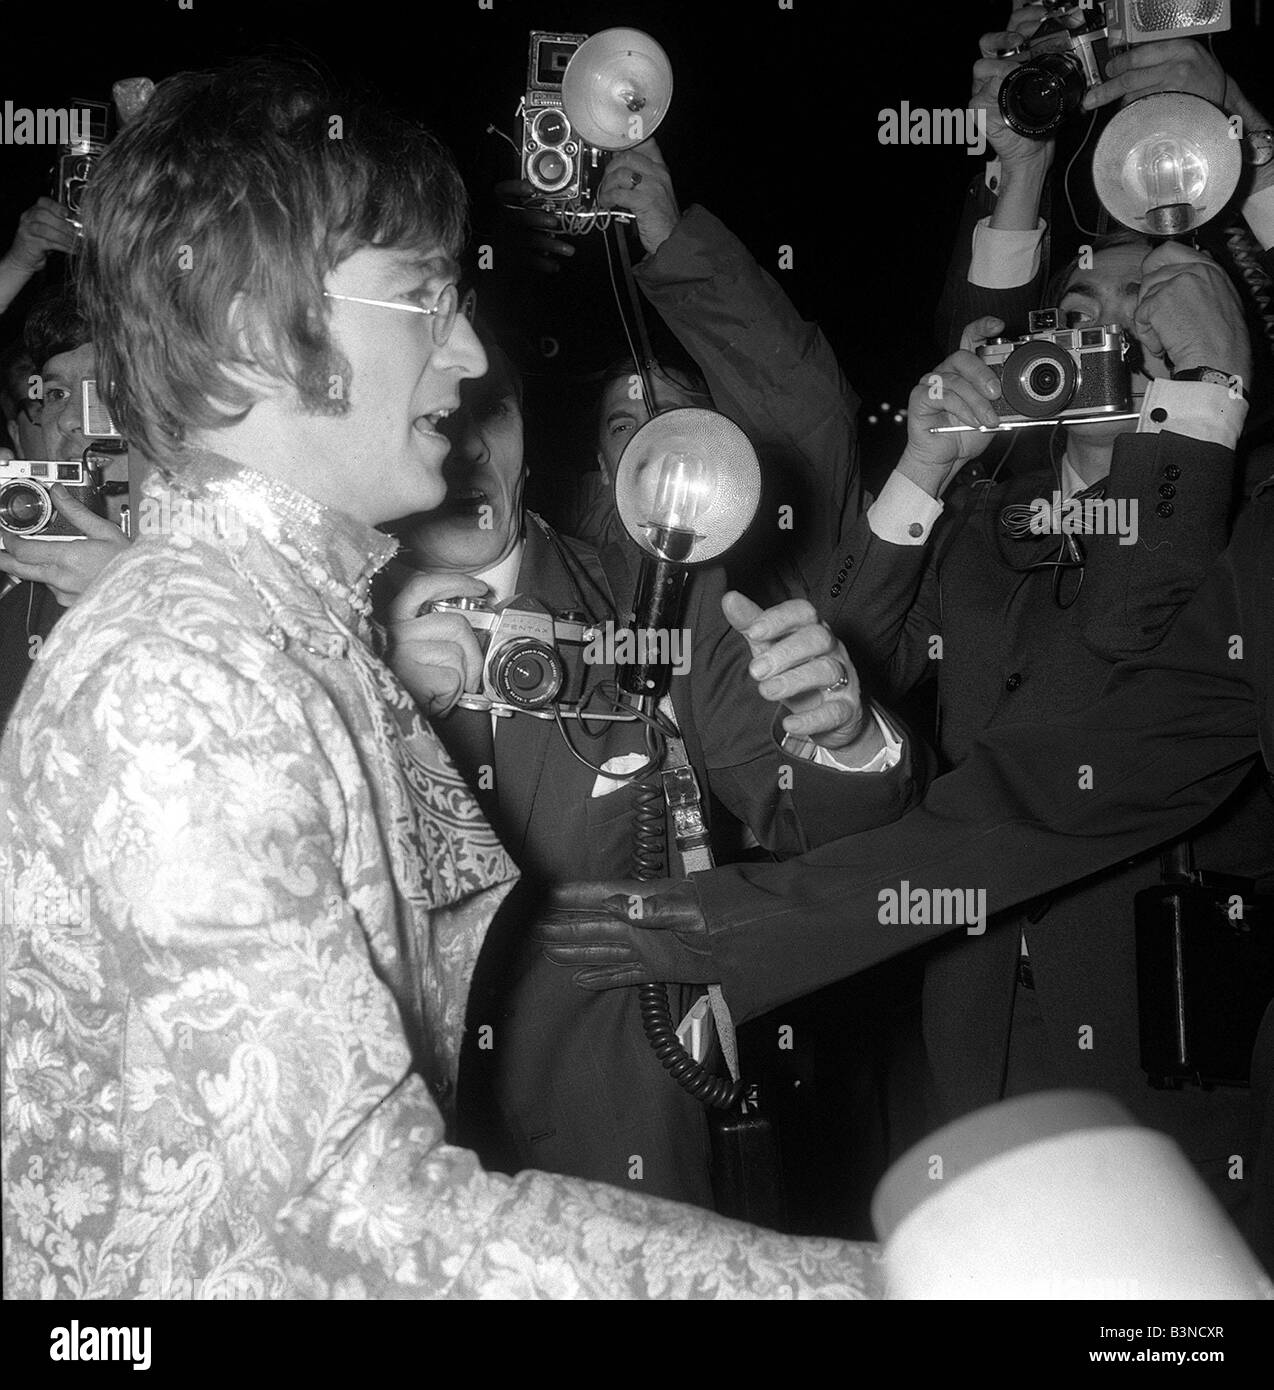 Groupe pop les Beatles Octobre 1967 John Lennon Paul McCartney George Harrison Ringo Starr Premiere film comment j'ai gagné la guerre à Piccadilly Circus, John Lennon en arrivant à la premiere Banque D'Images